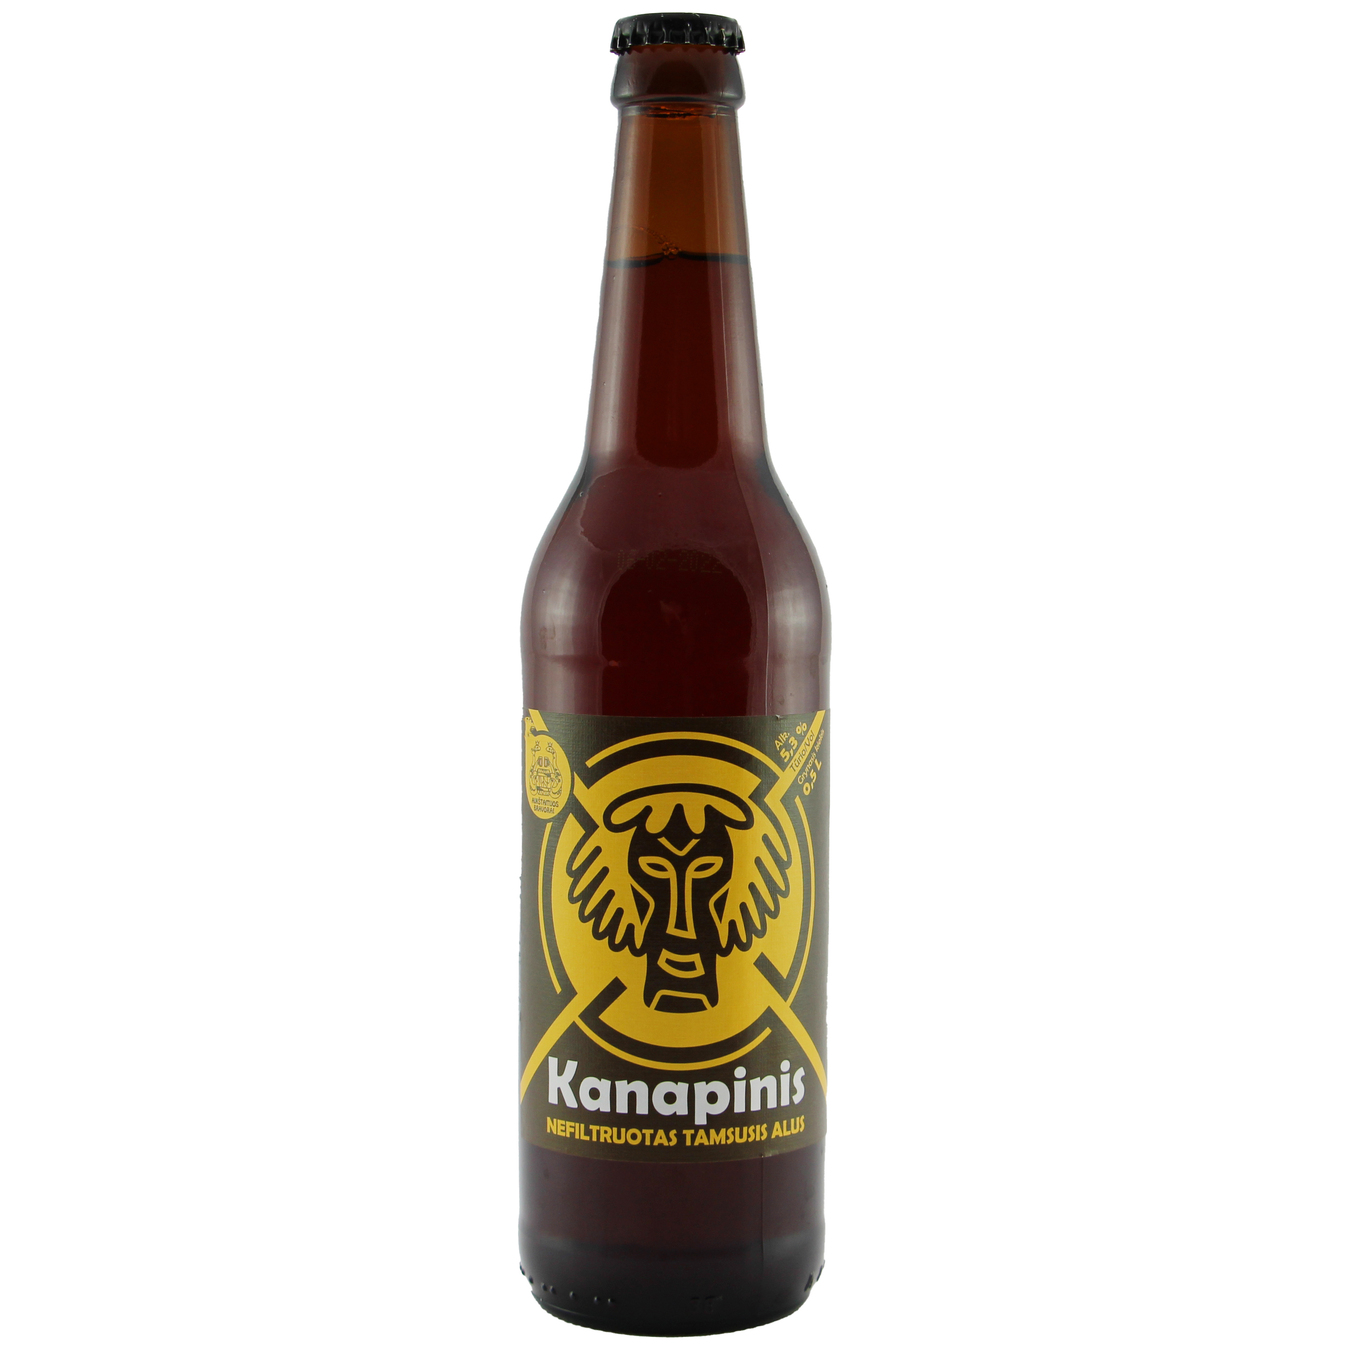 Пиво Kanapinis темное нефильтрованное 5,3% 0,5л